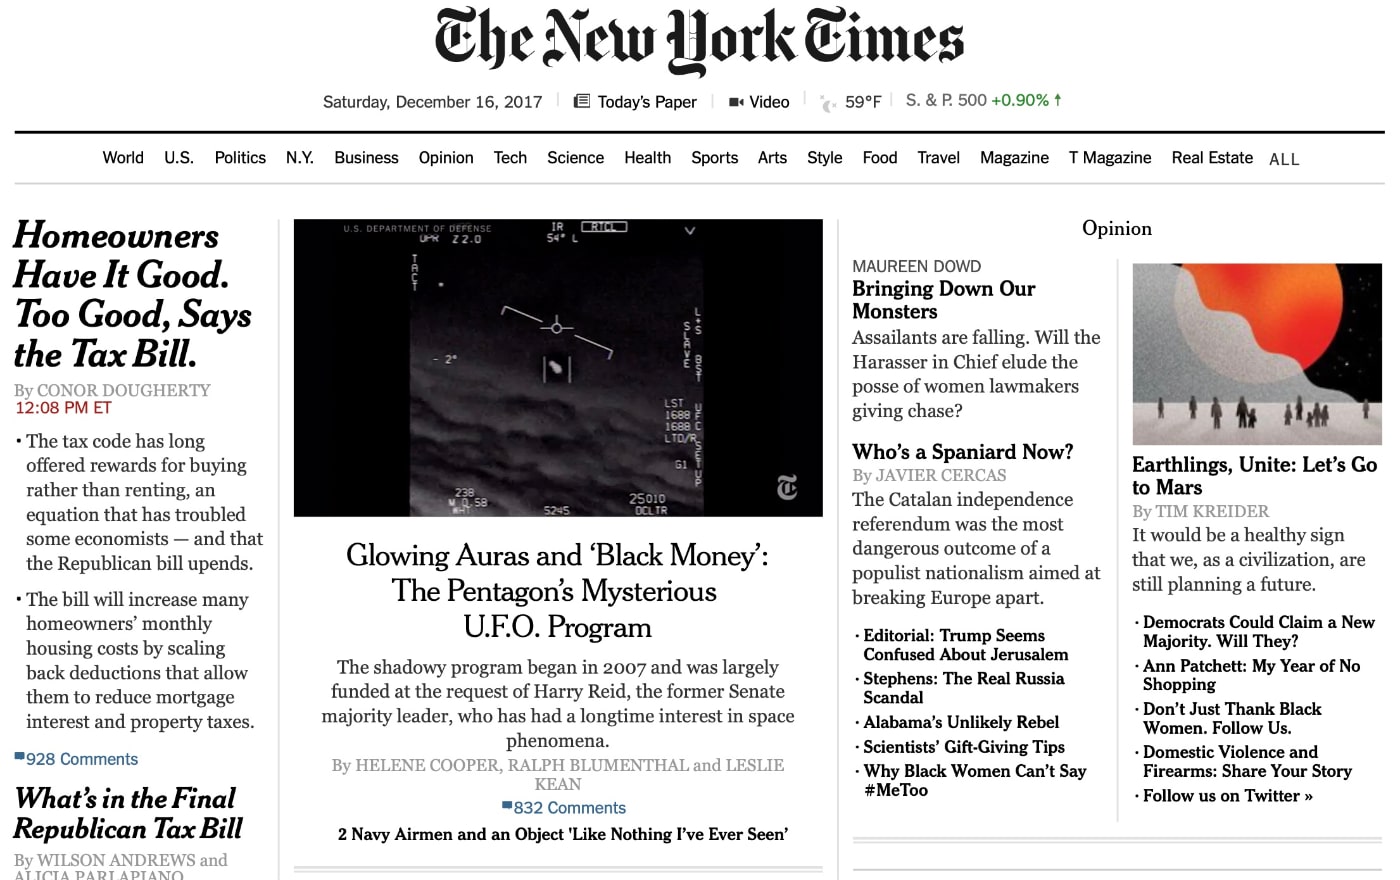 El reportaje del 16 de diciembre de 2017sobre el nuevo programa de investi-gación ovni del Pentágono fue la noticia principal en la web de 'The New York Times'.